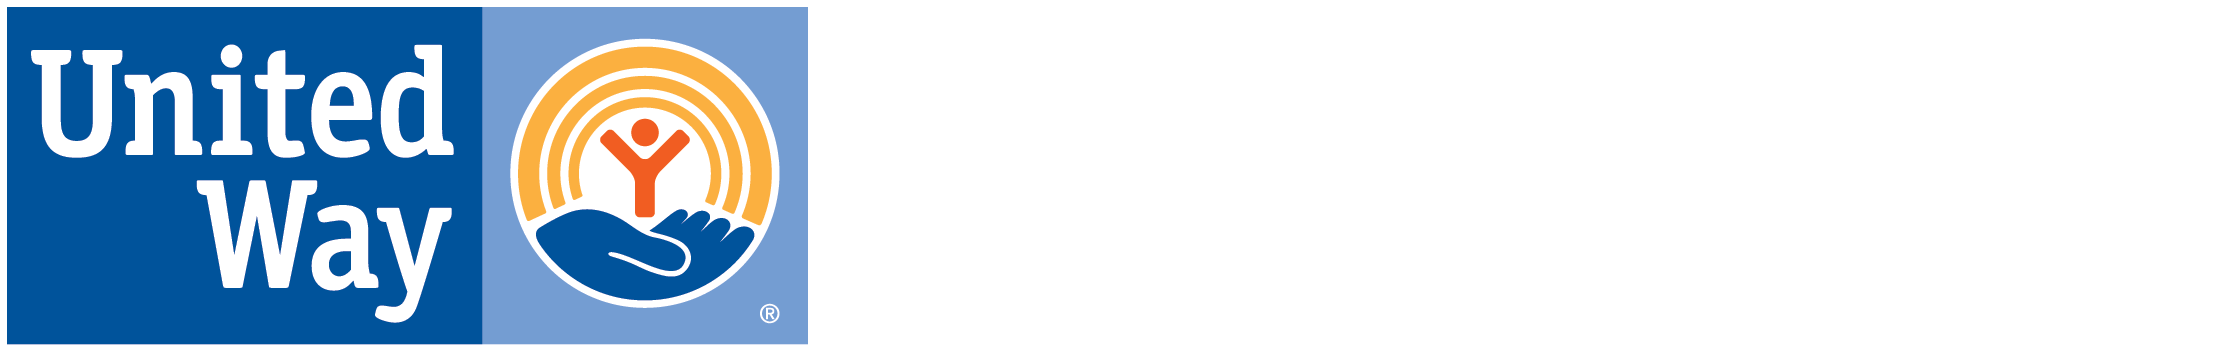 United way live united logo